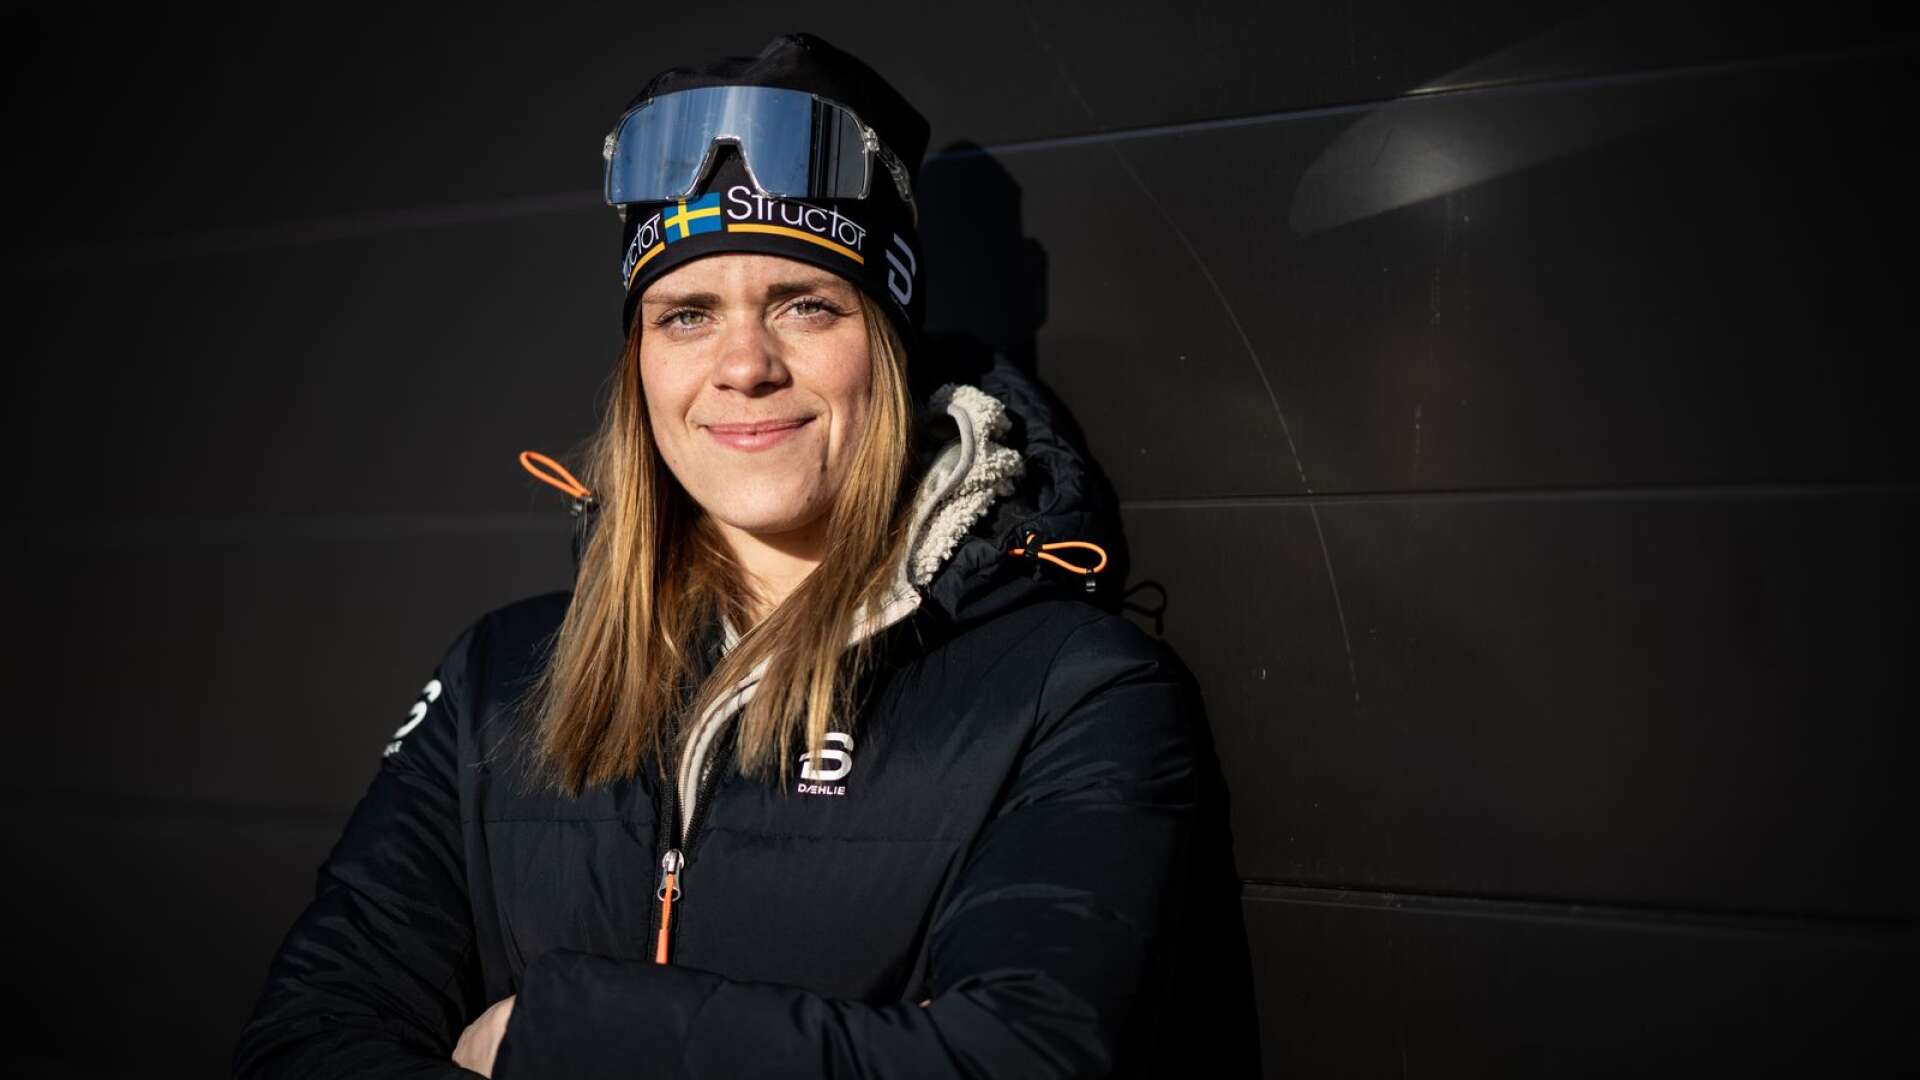 Torsbybon Lovisa Modig, som även tävlat för SK Bore, meddelar att hon är klar med karriären inom traditionell skidåkning.